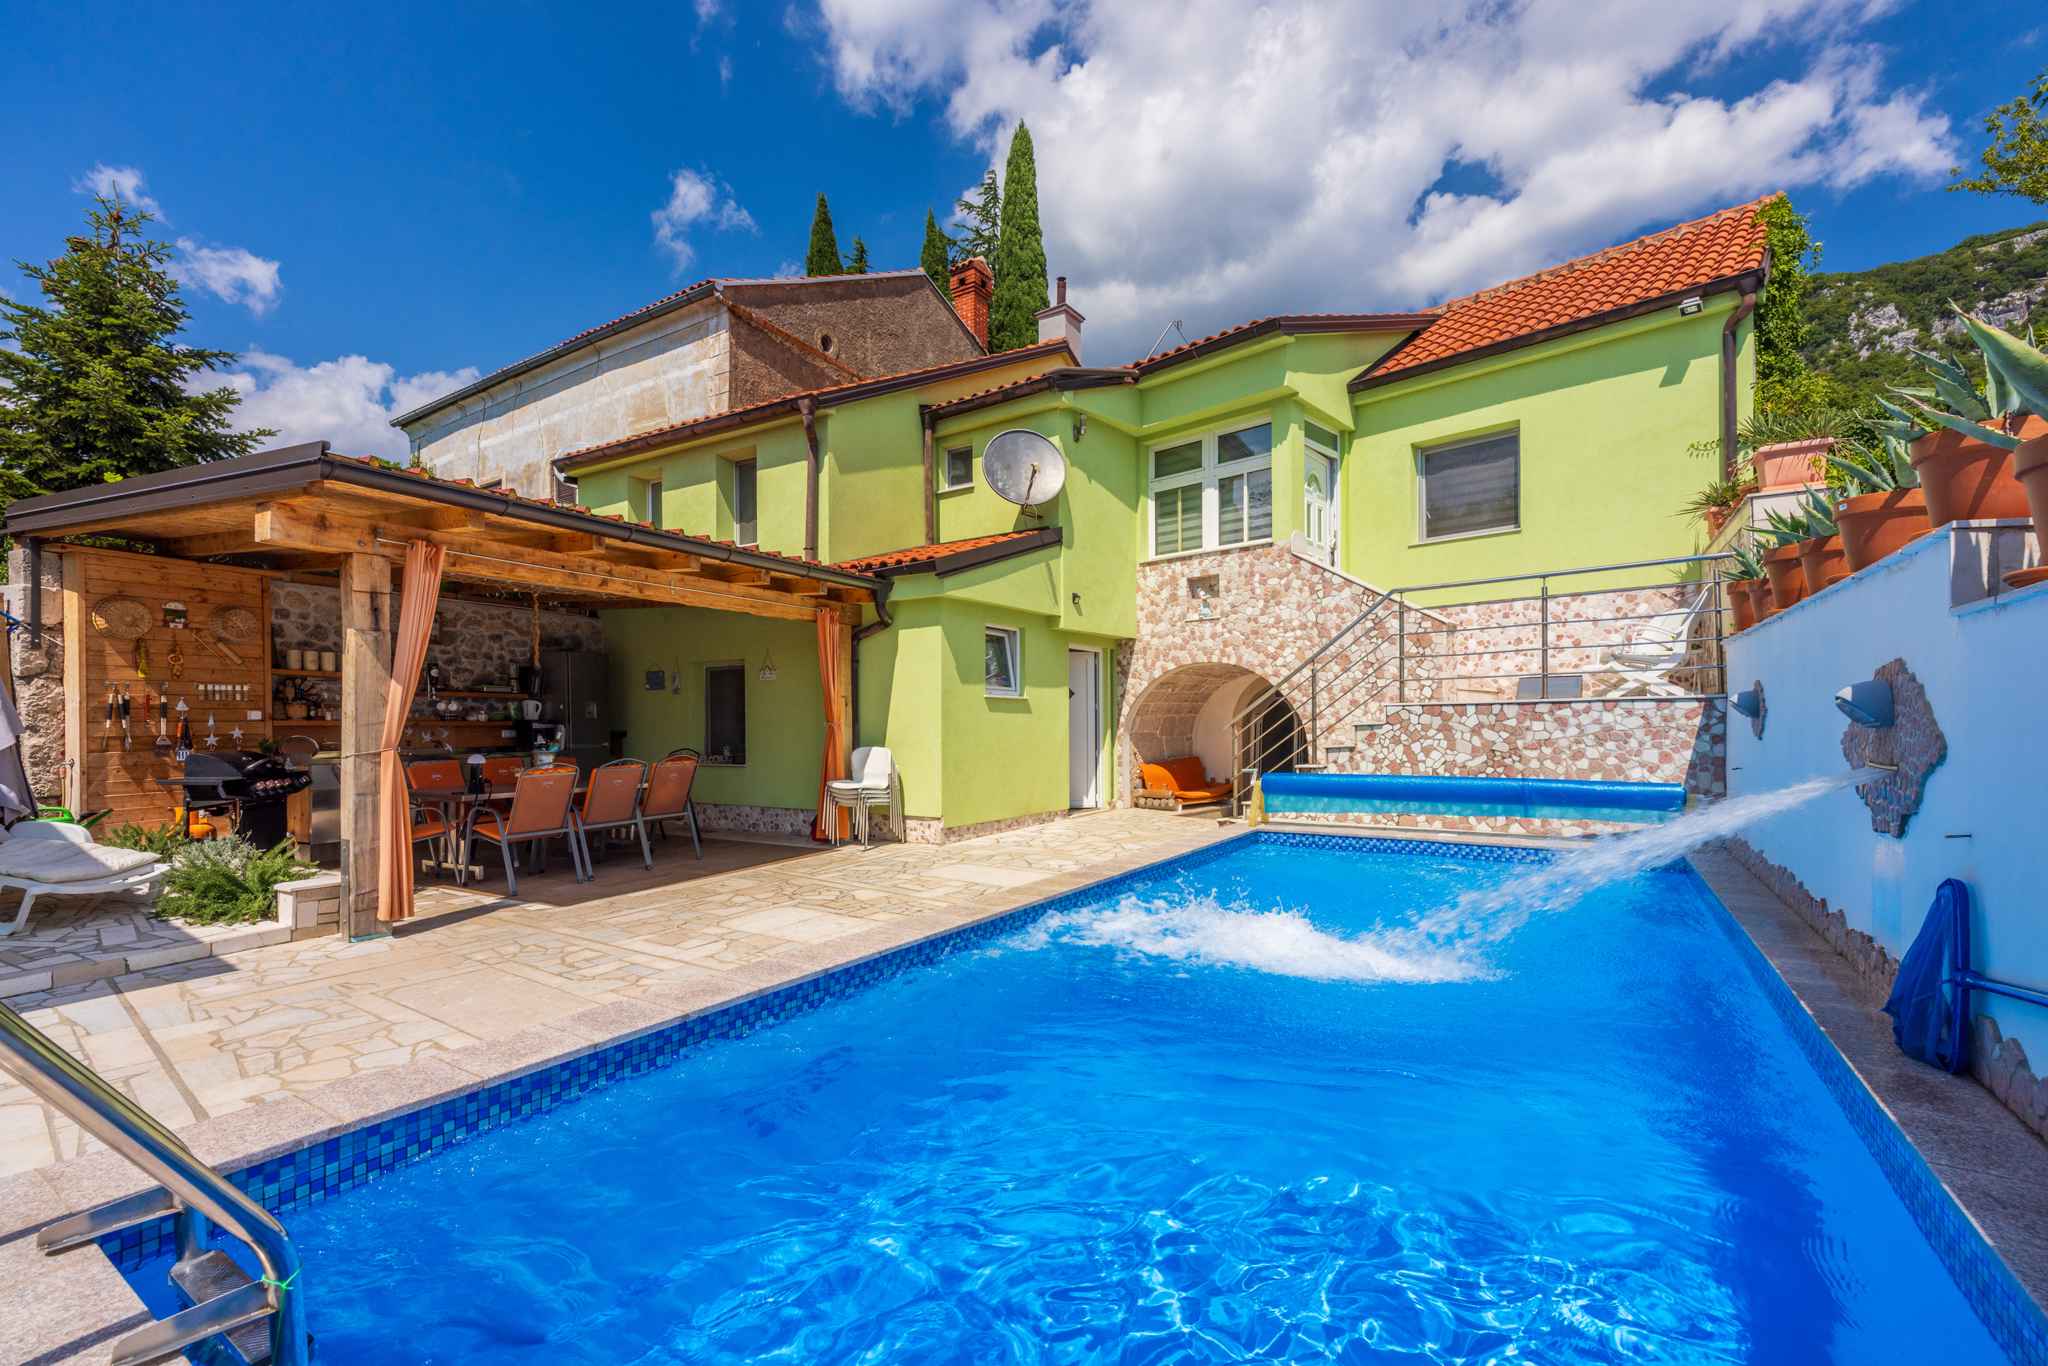 Ferienhaus mit Pool und Grill im Grünen Ferienhaus in Kroatien